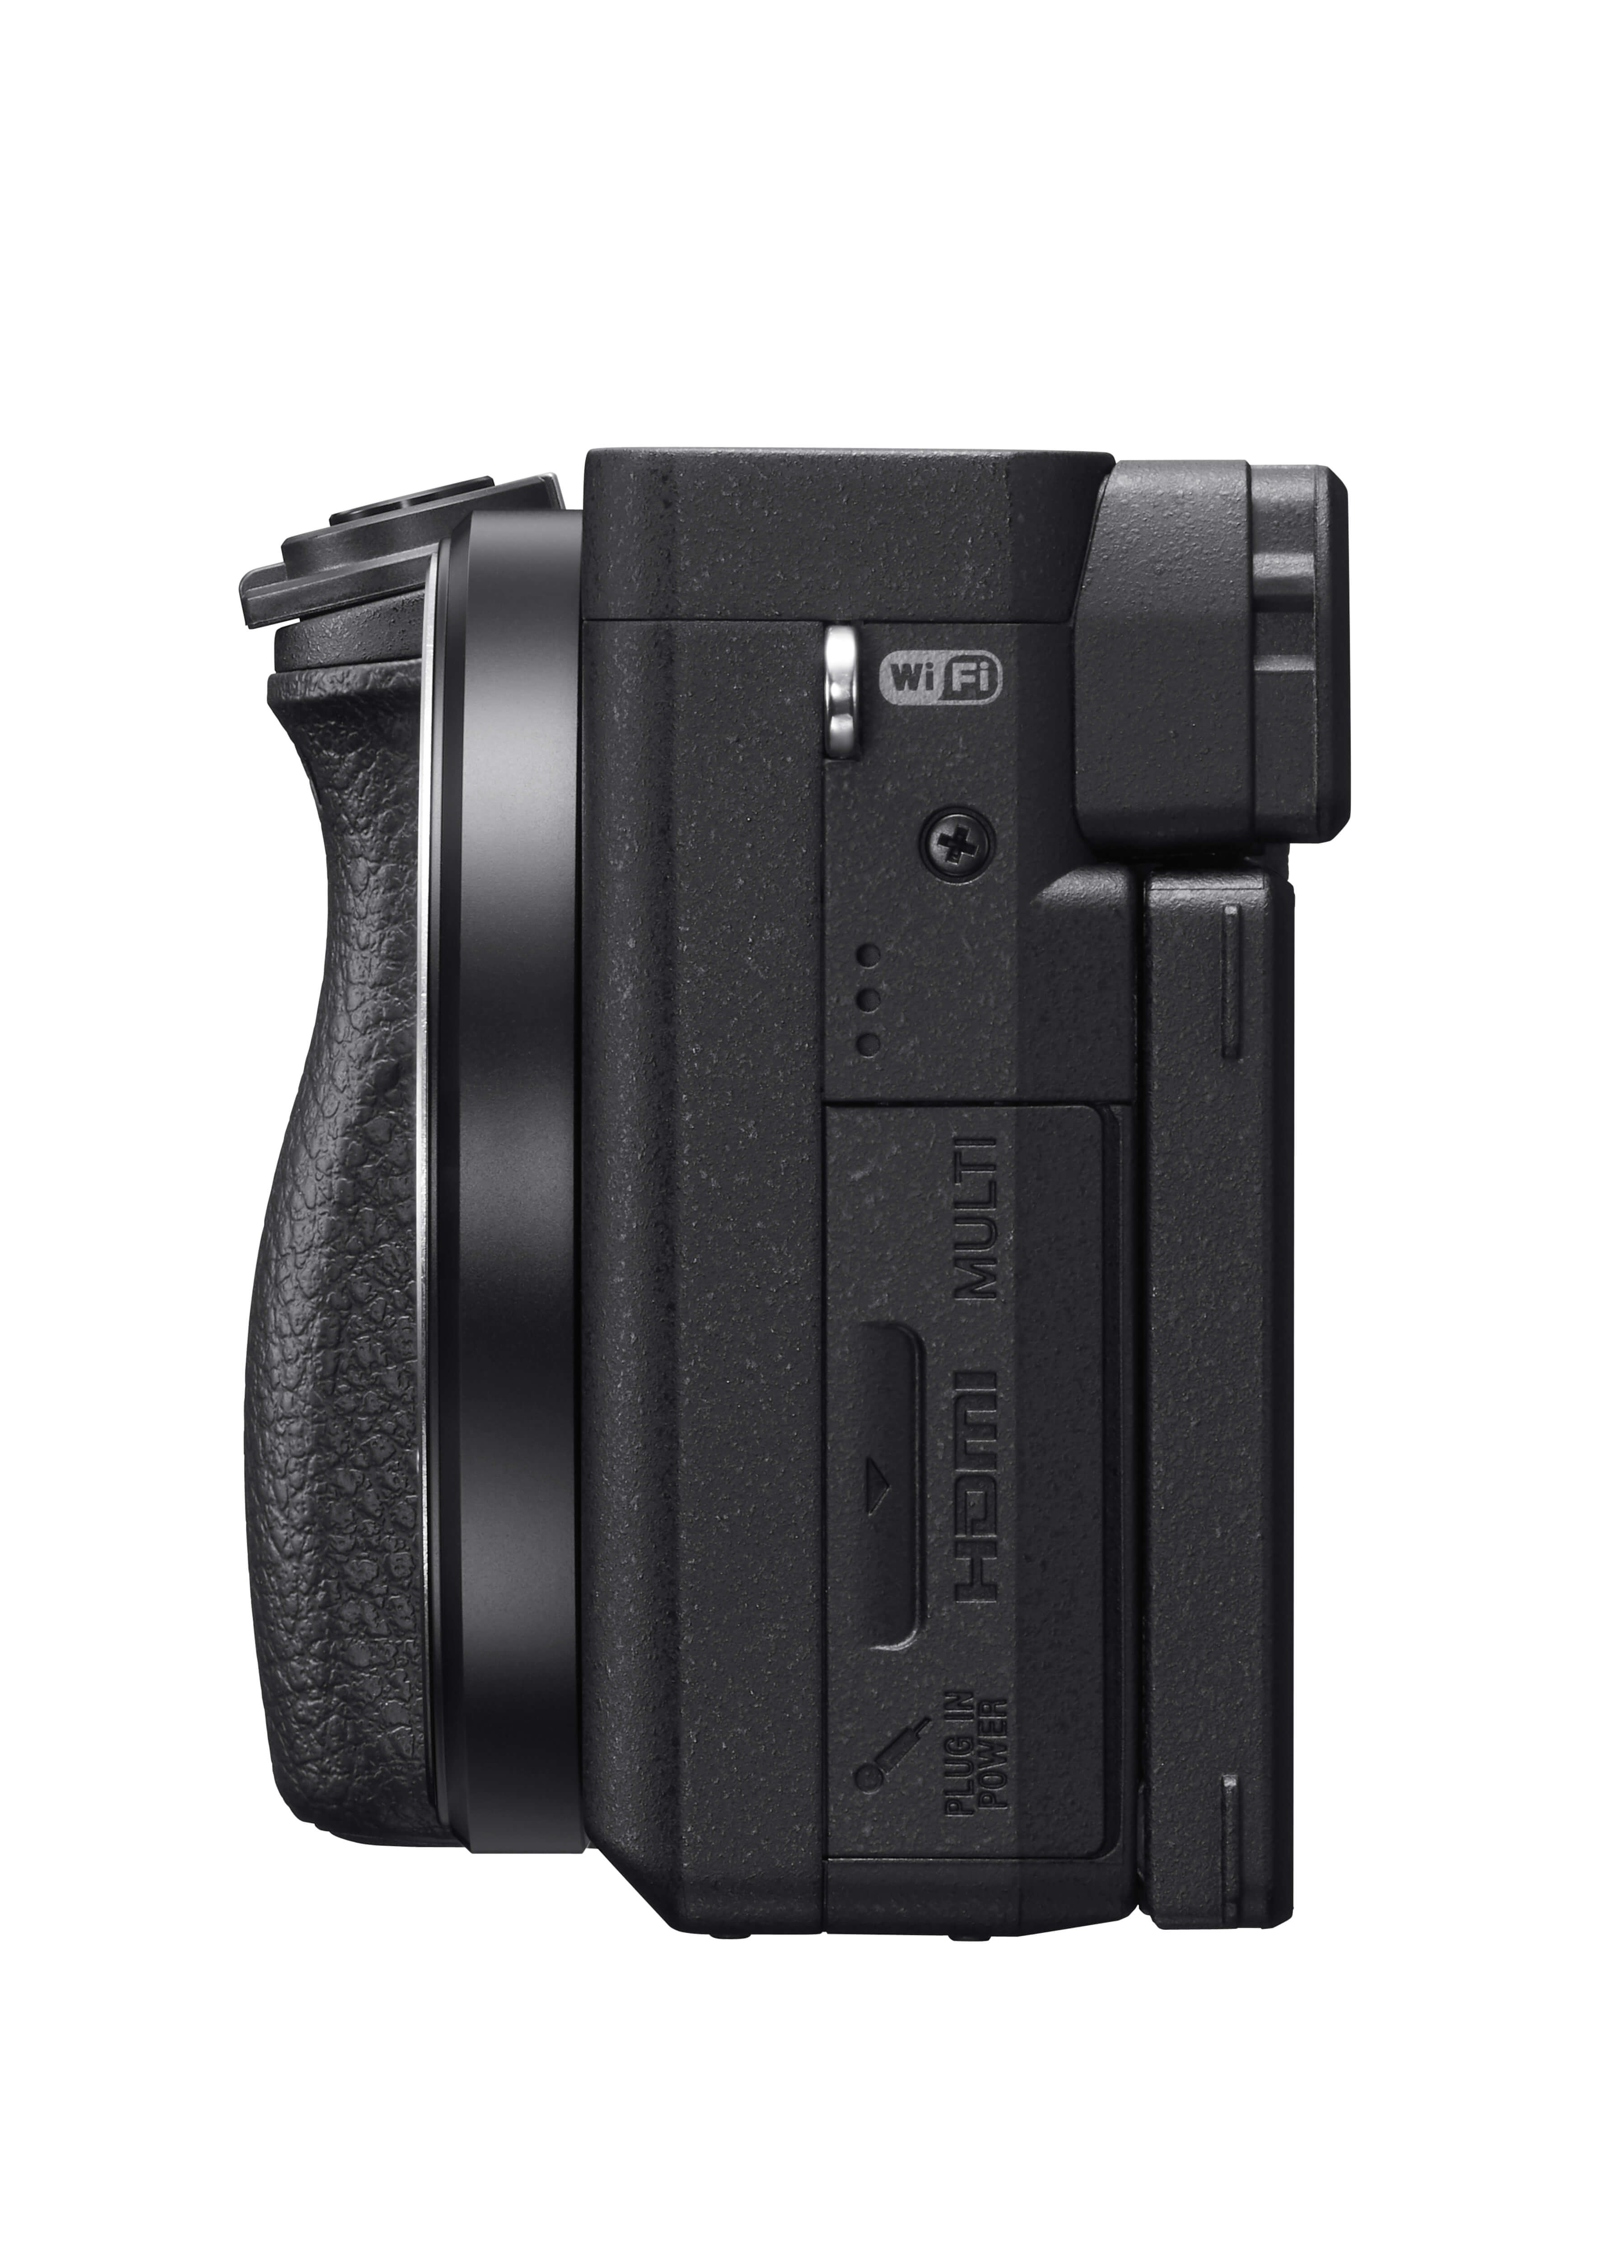 α6400 - 數位單眼相機(黑) - Sony 台灣官方購物網站- Sony Store